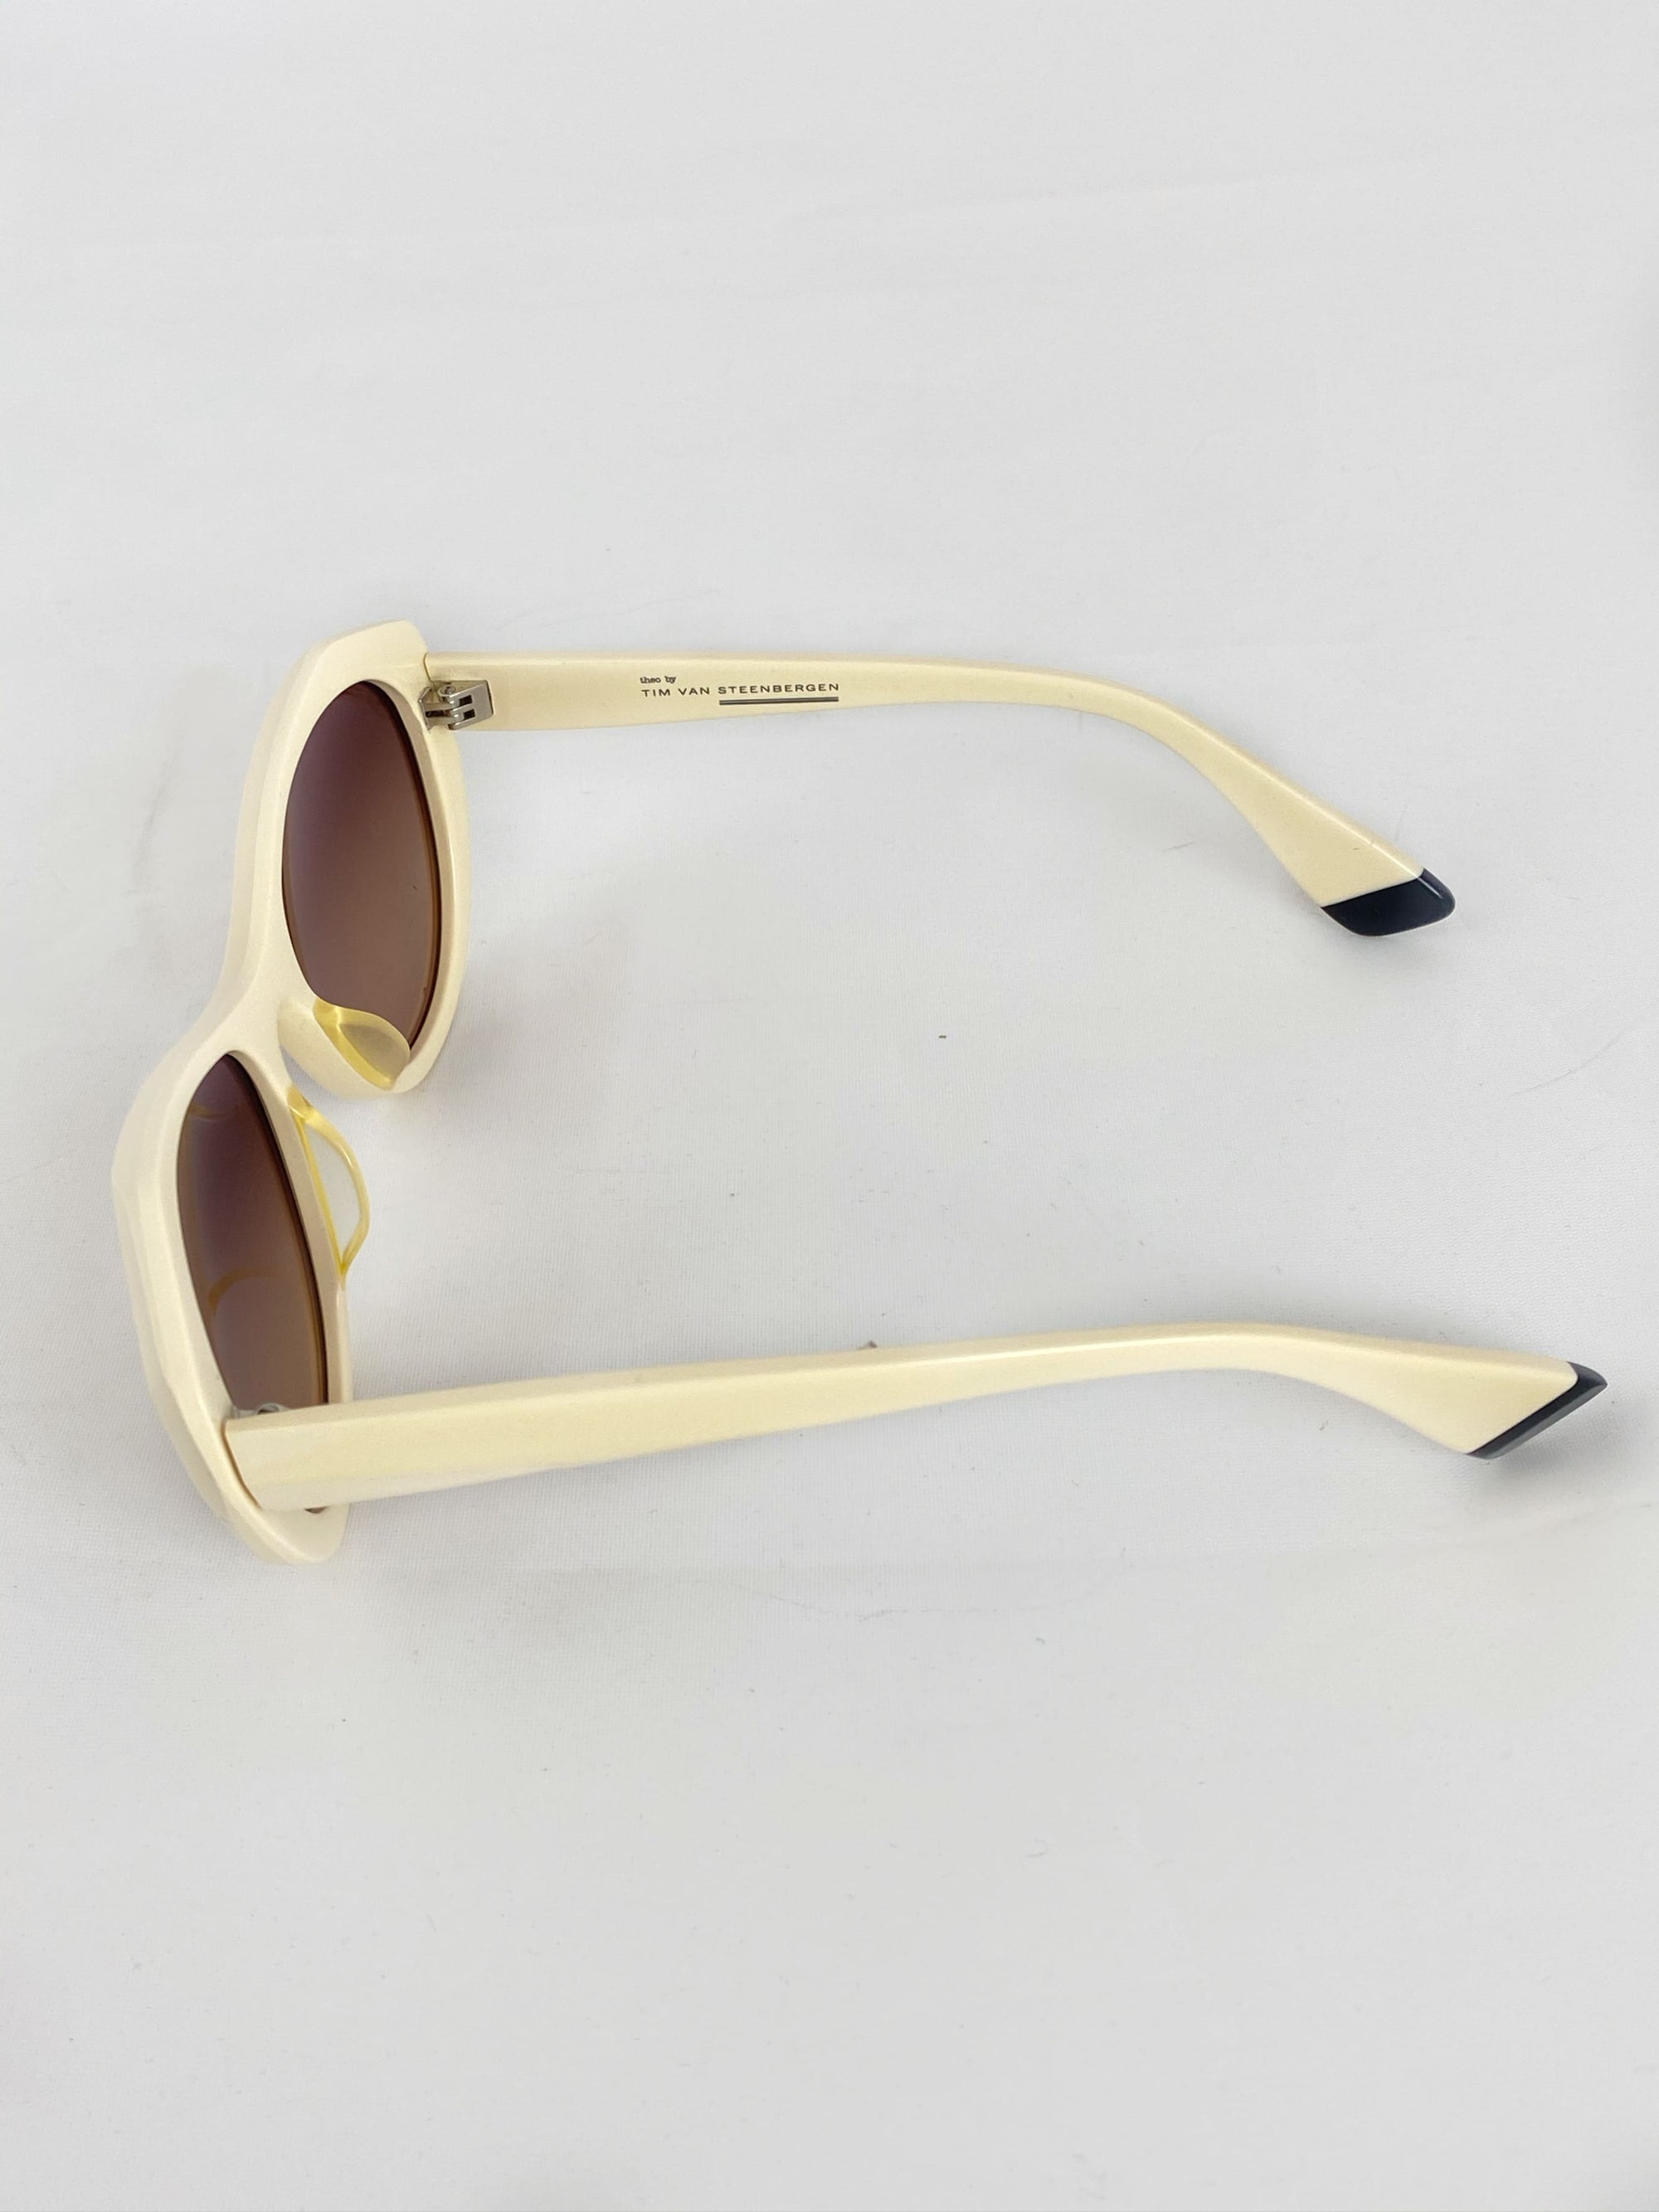 Produktbild der Theo by Tim Van Steenbergen Sunglasses creme des Bügels von der Seite vor weißem Hintergrund.